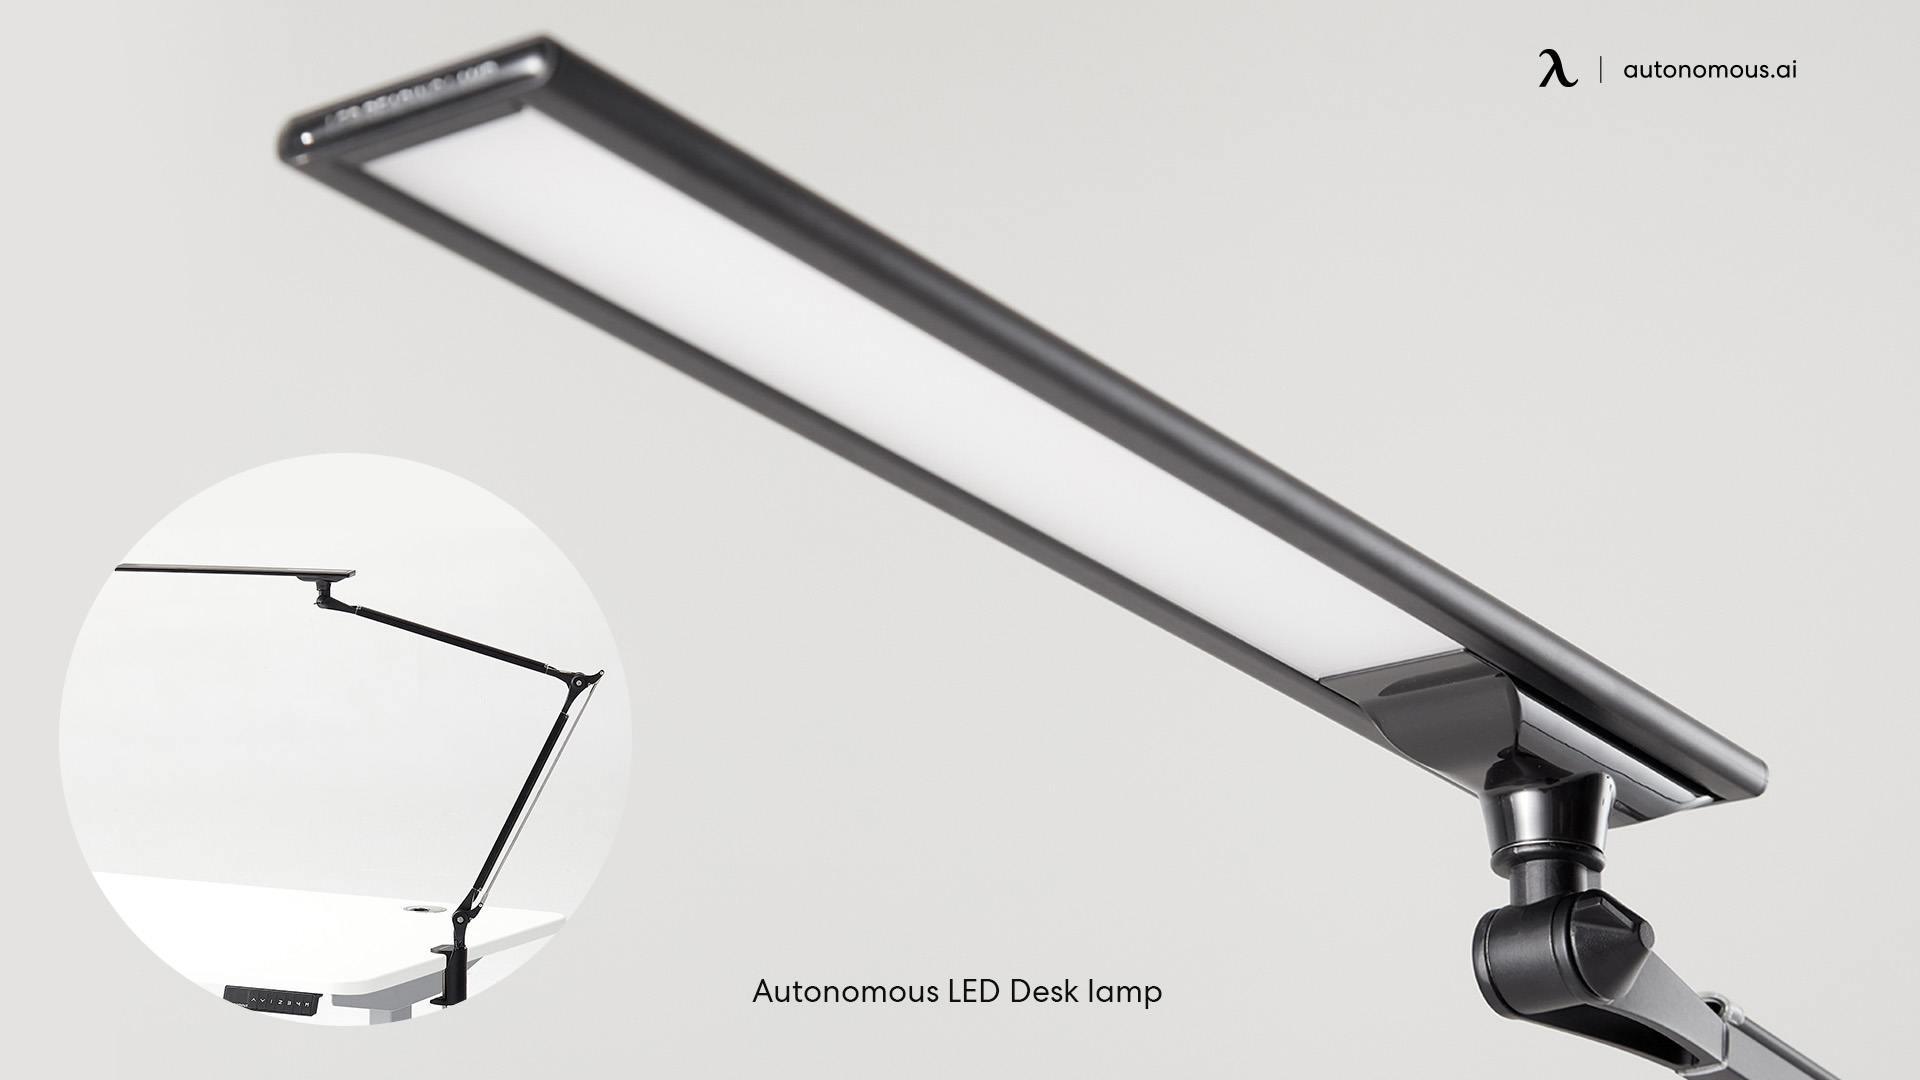 Autonomous LED Desk Lamp adjustable table lamp